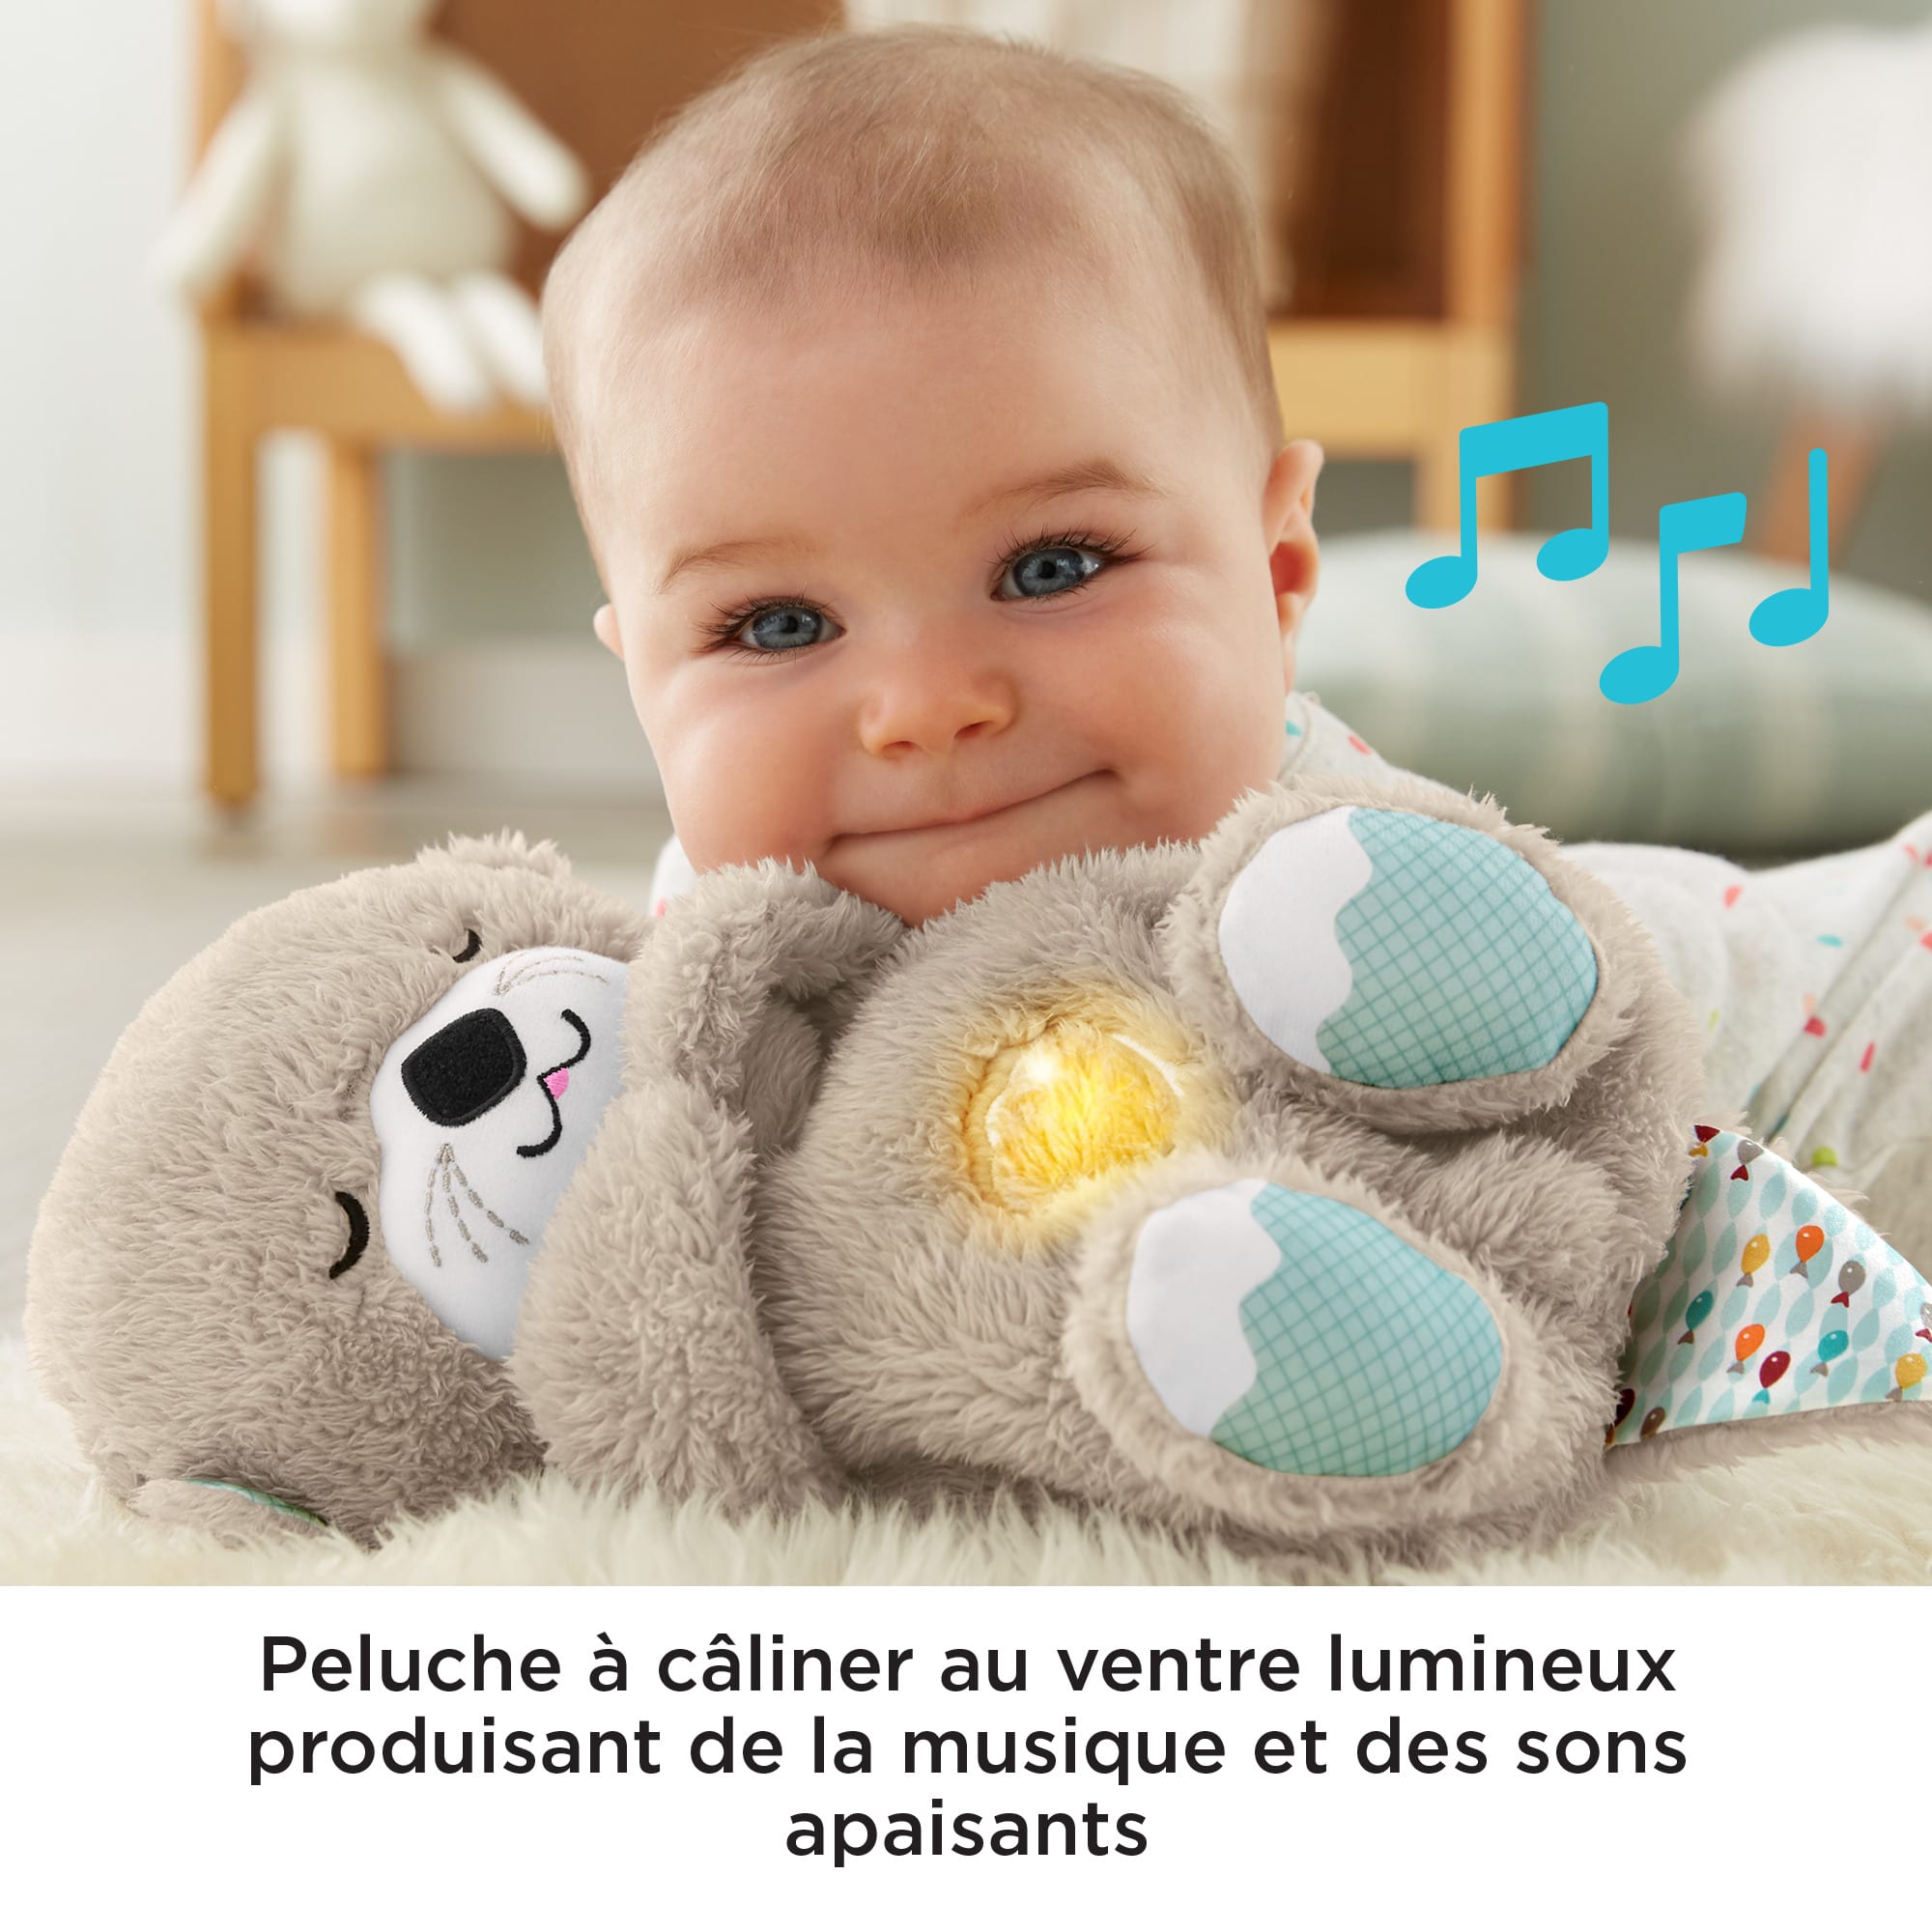 Veilleuse Bébé Musicale et Lumineuse,Bruit Blanc Sons Musique  Lu-mières-Jouet Enfant-Cadeau Naissance Fille et Garçon Unique-Aide Sommeil